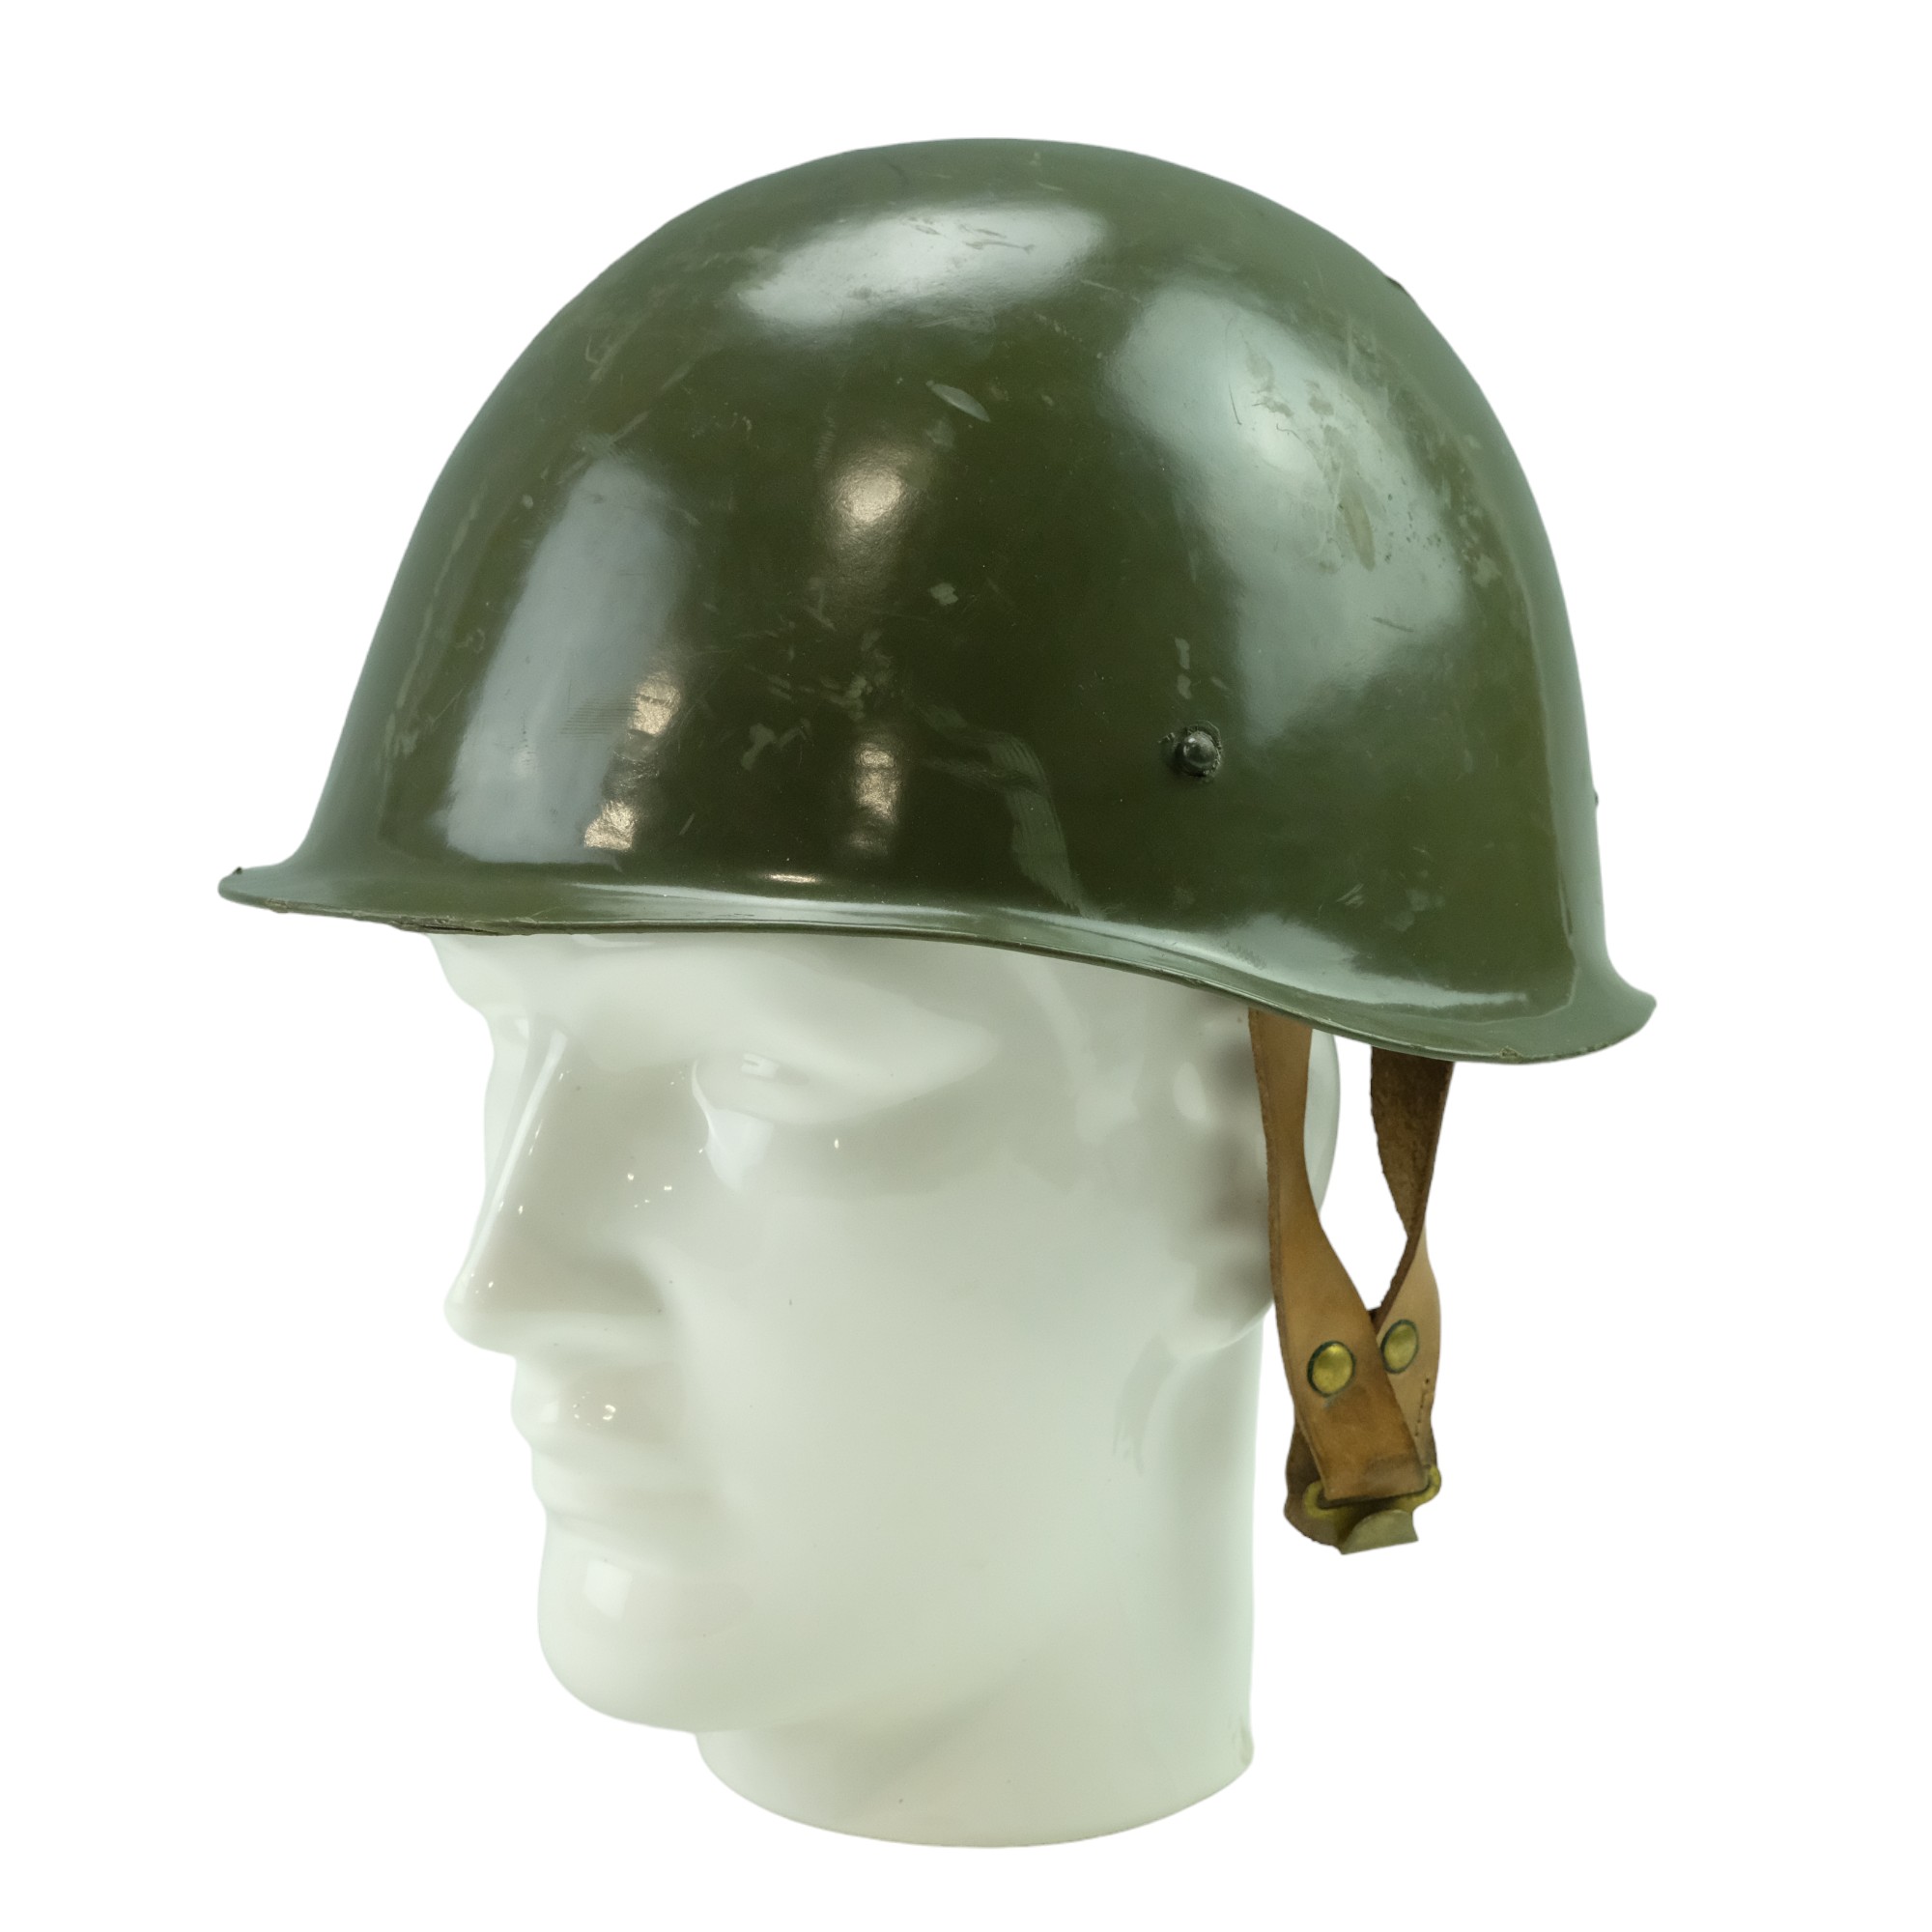 A Hungarian Ssh40 helmet